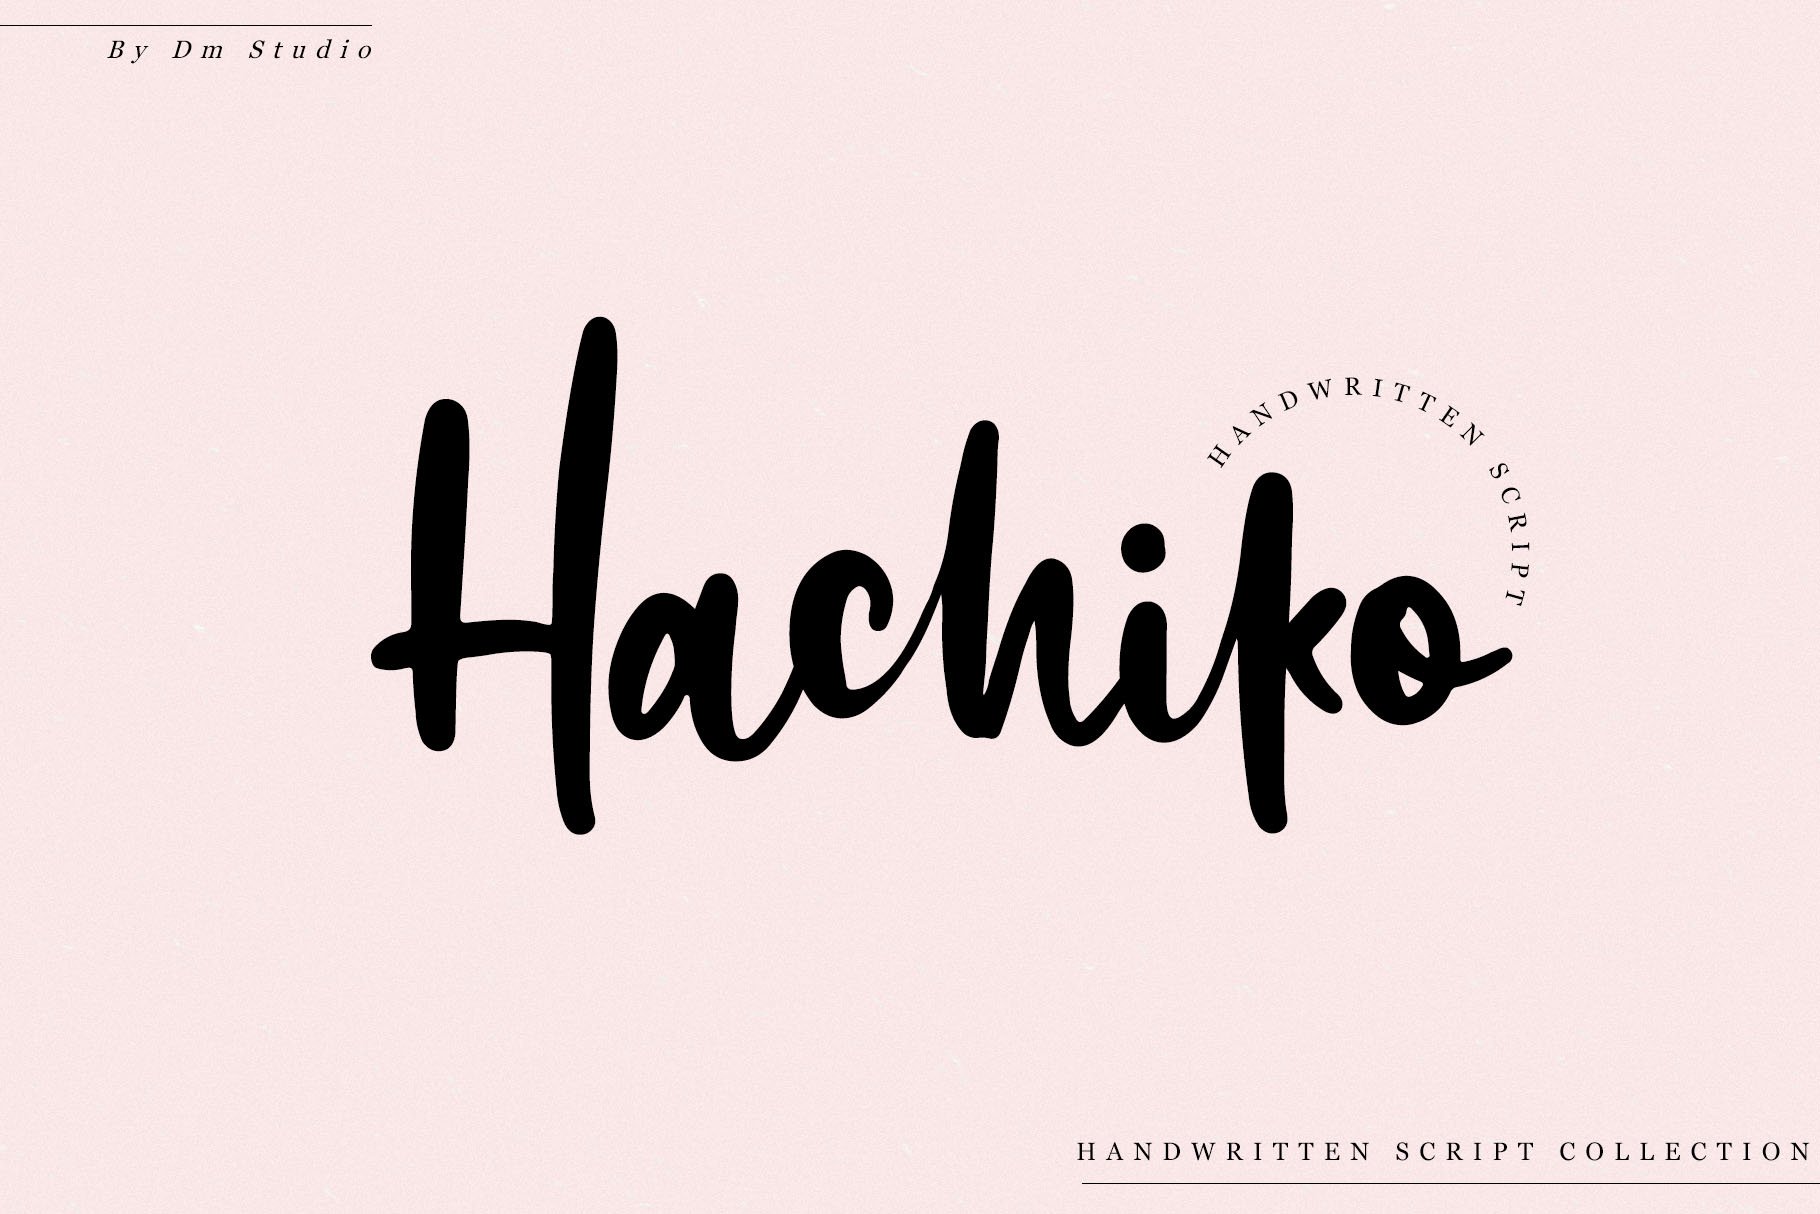 Hachiko